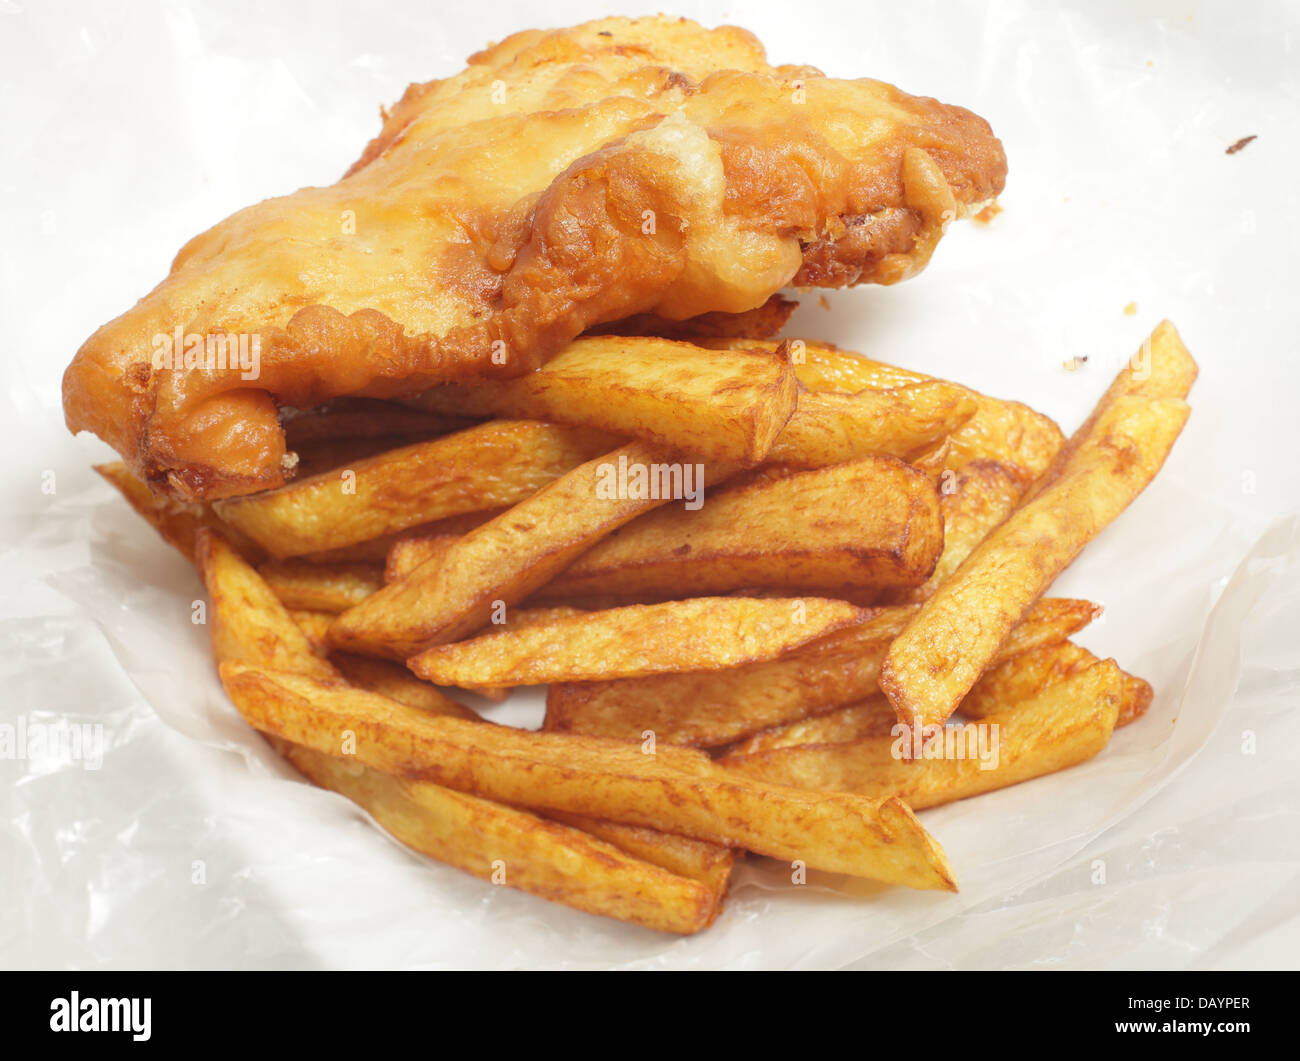 La 'chip shop' style morue frite en pâte avec chips (frites) dans un emballage de papier sulfurisé. Banque D'Images